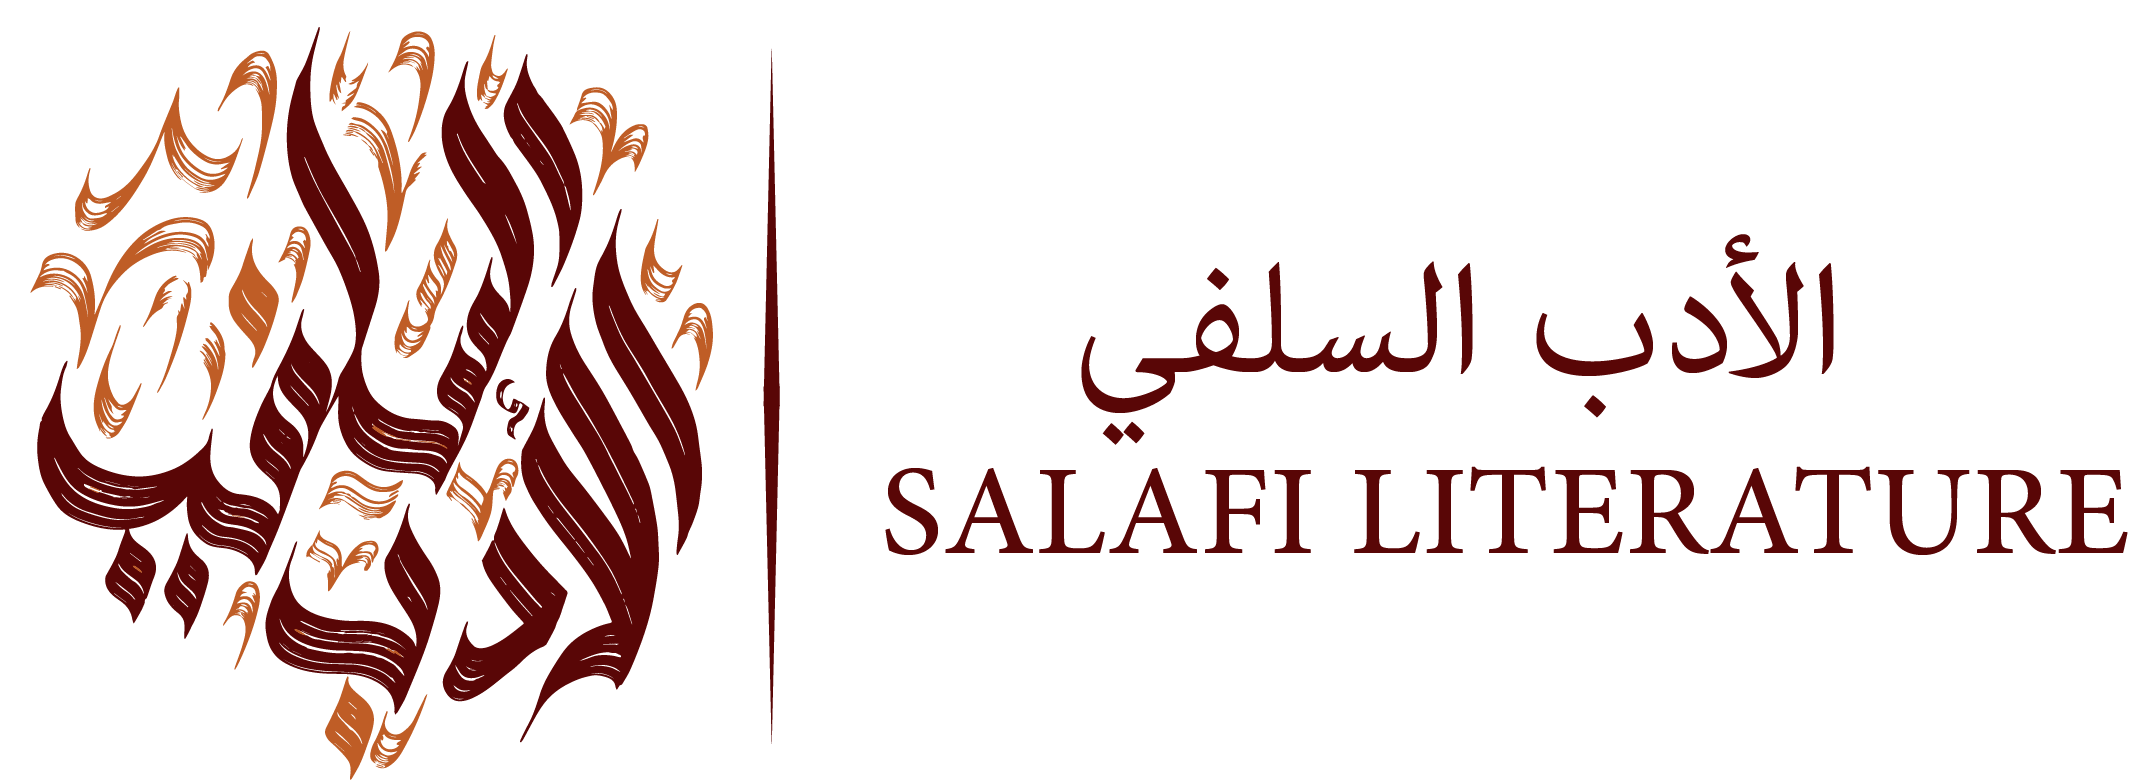 Salafi Literature